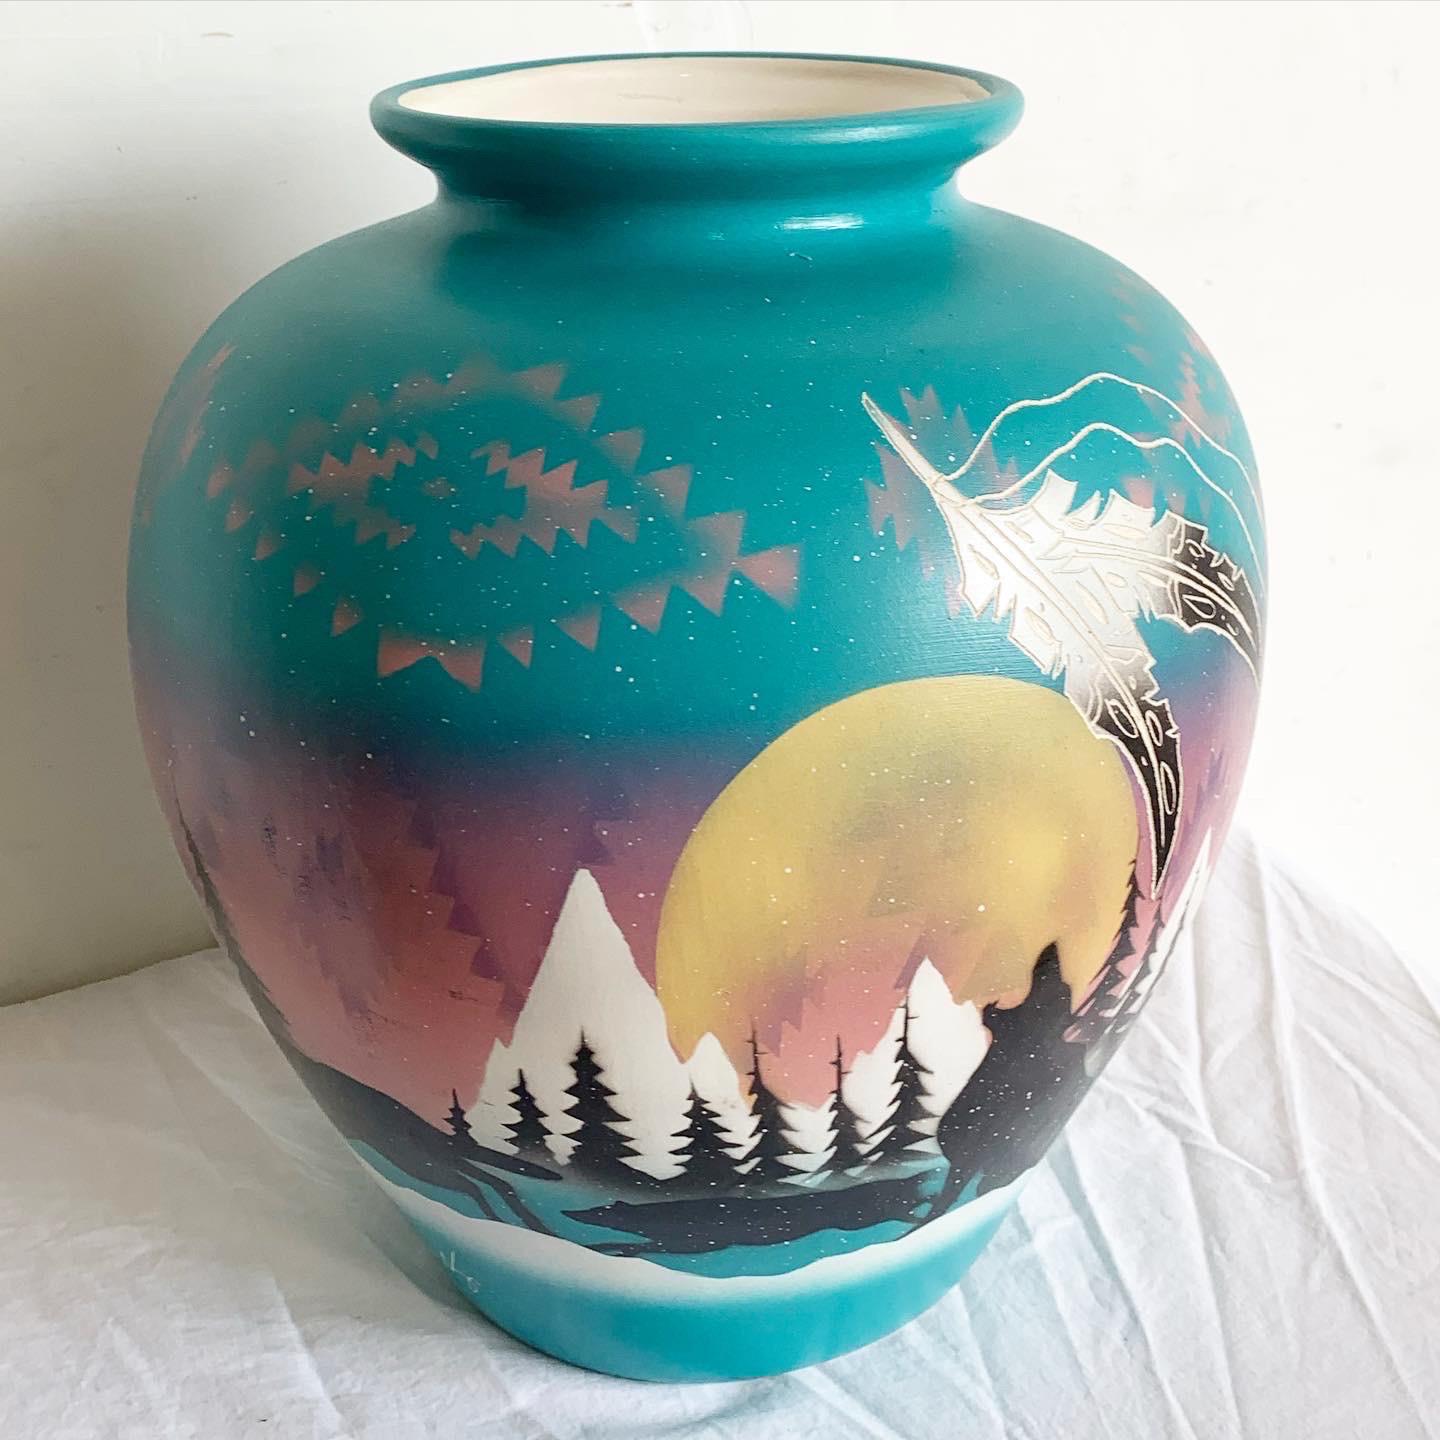 Tauchen Sie ein in die Kunst der 1980er Jahre mit dieser Vase von Southwest Pottery. Handbemalt in einem leuchtenden Grünton, zeigt es einen einsamen Wolf vor einer mondbeschienenen Berglandschaft. Diese Darstellung, in der Natur und Folklore